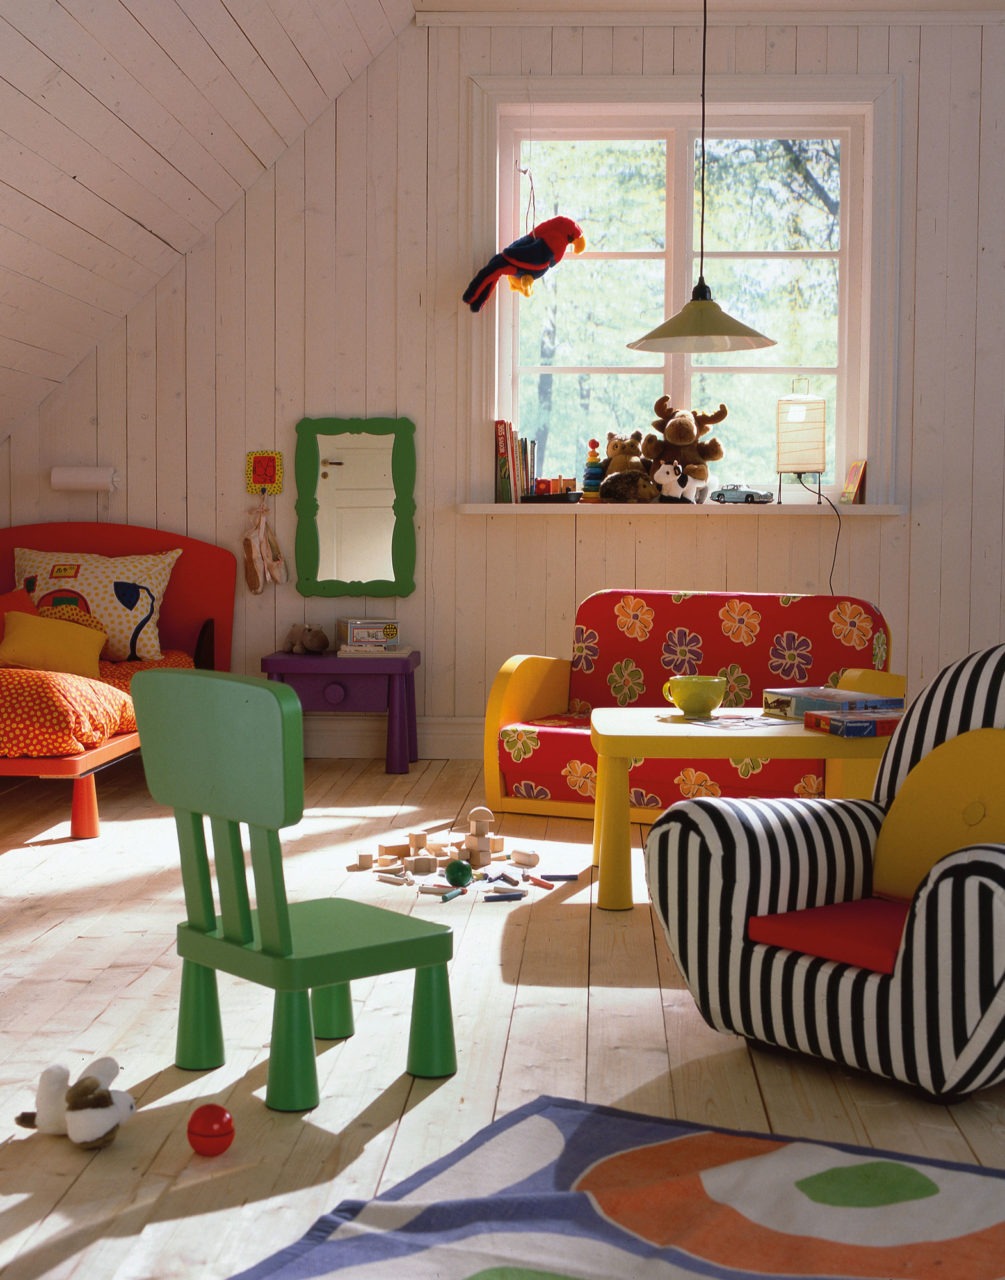 Färgglada möbler i bullig stil, modell MAMMUT, samt spridda leksaker i ett rum med golv, väggar och snedtak i ljust trä.